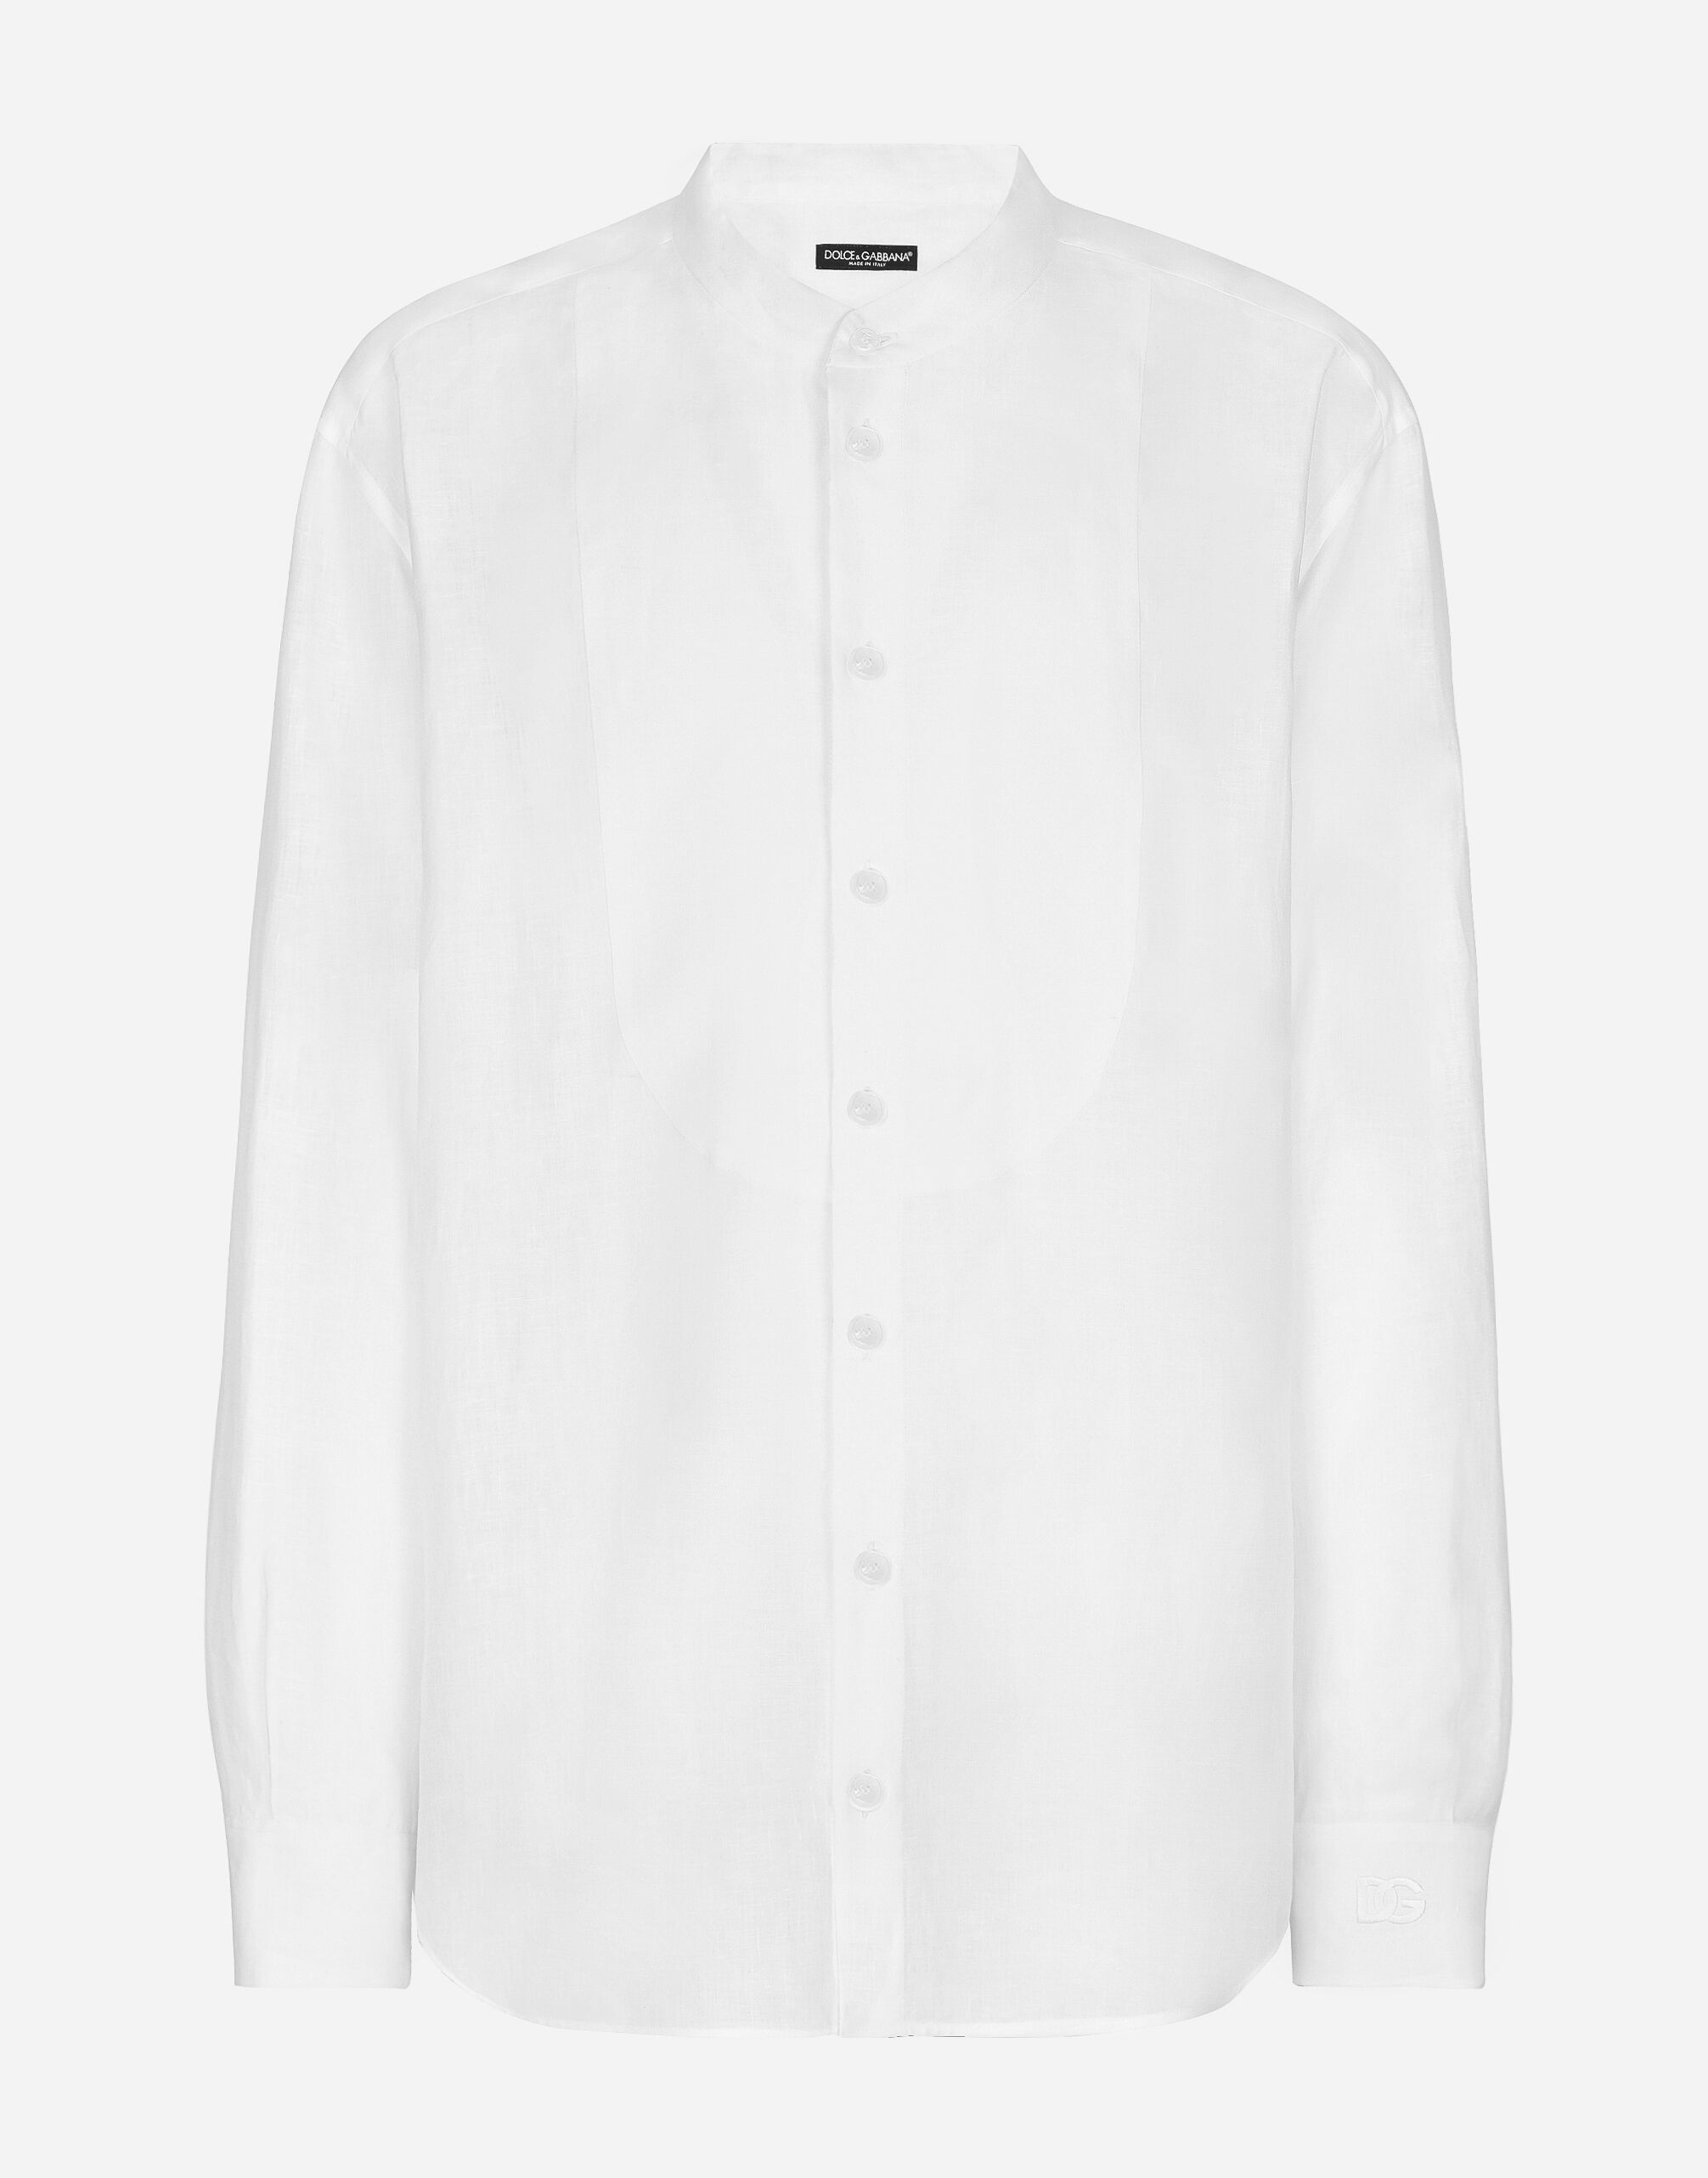 Dolce & Gabbana Leinenhemd weiche Hemdbrust und DG-Stickerei Print G5IF1THI1QA